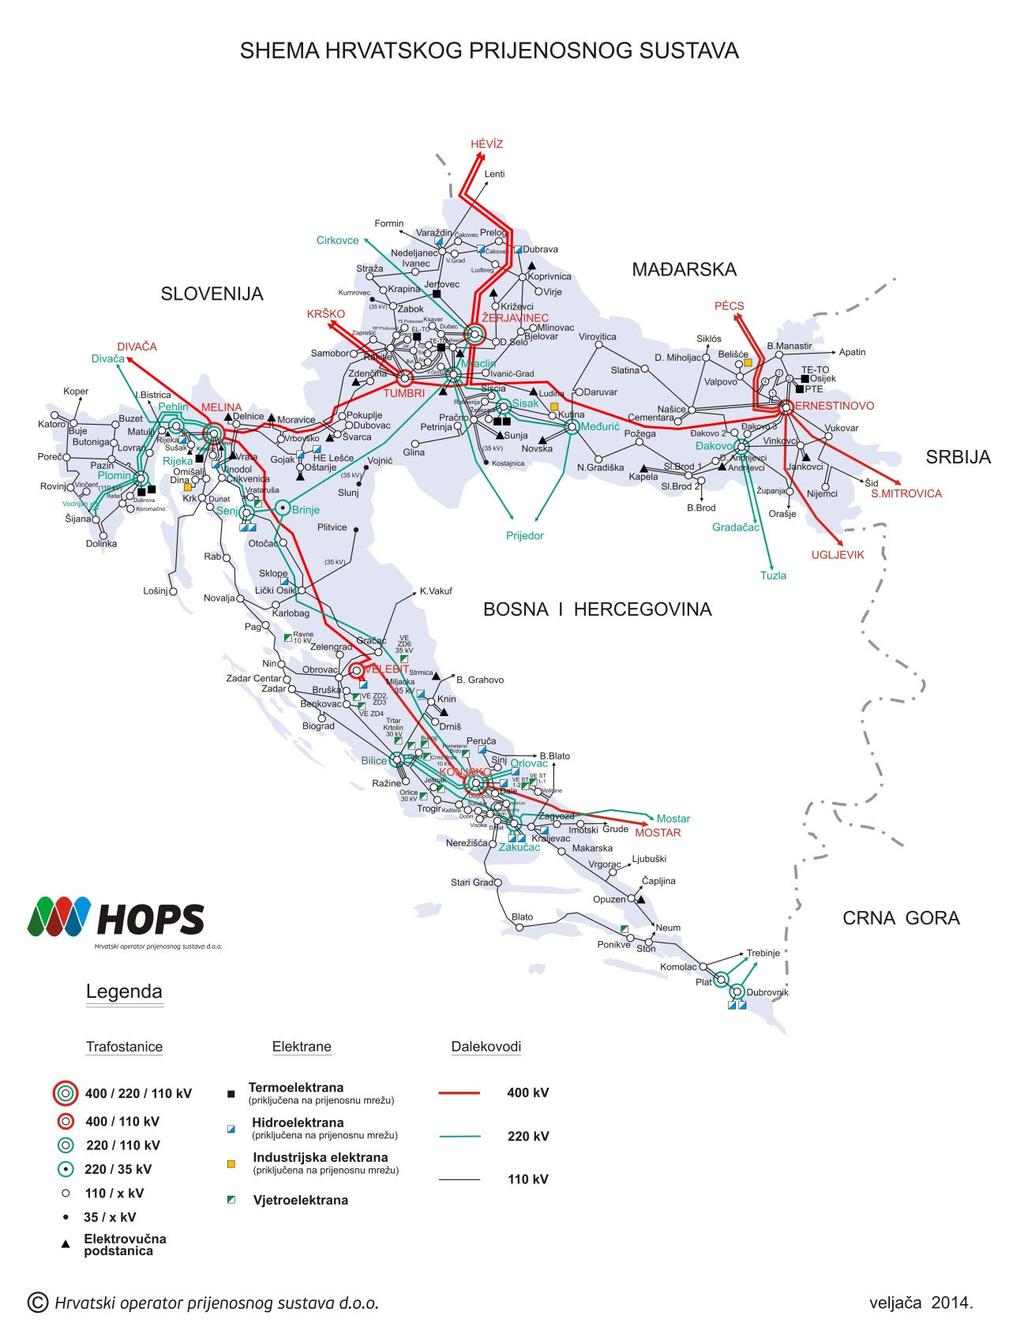 izvoze, uvoze i tranzite električne energije preko prijenosne mreže te svrstava RH u vrlo važnu poveznicu elektroenergetskih sustava srednje i jugoistočne Europe.